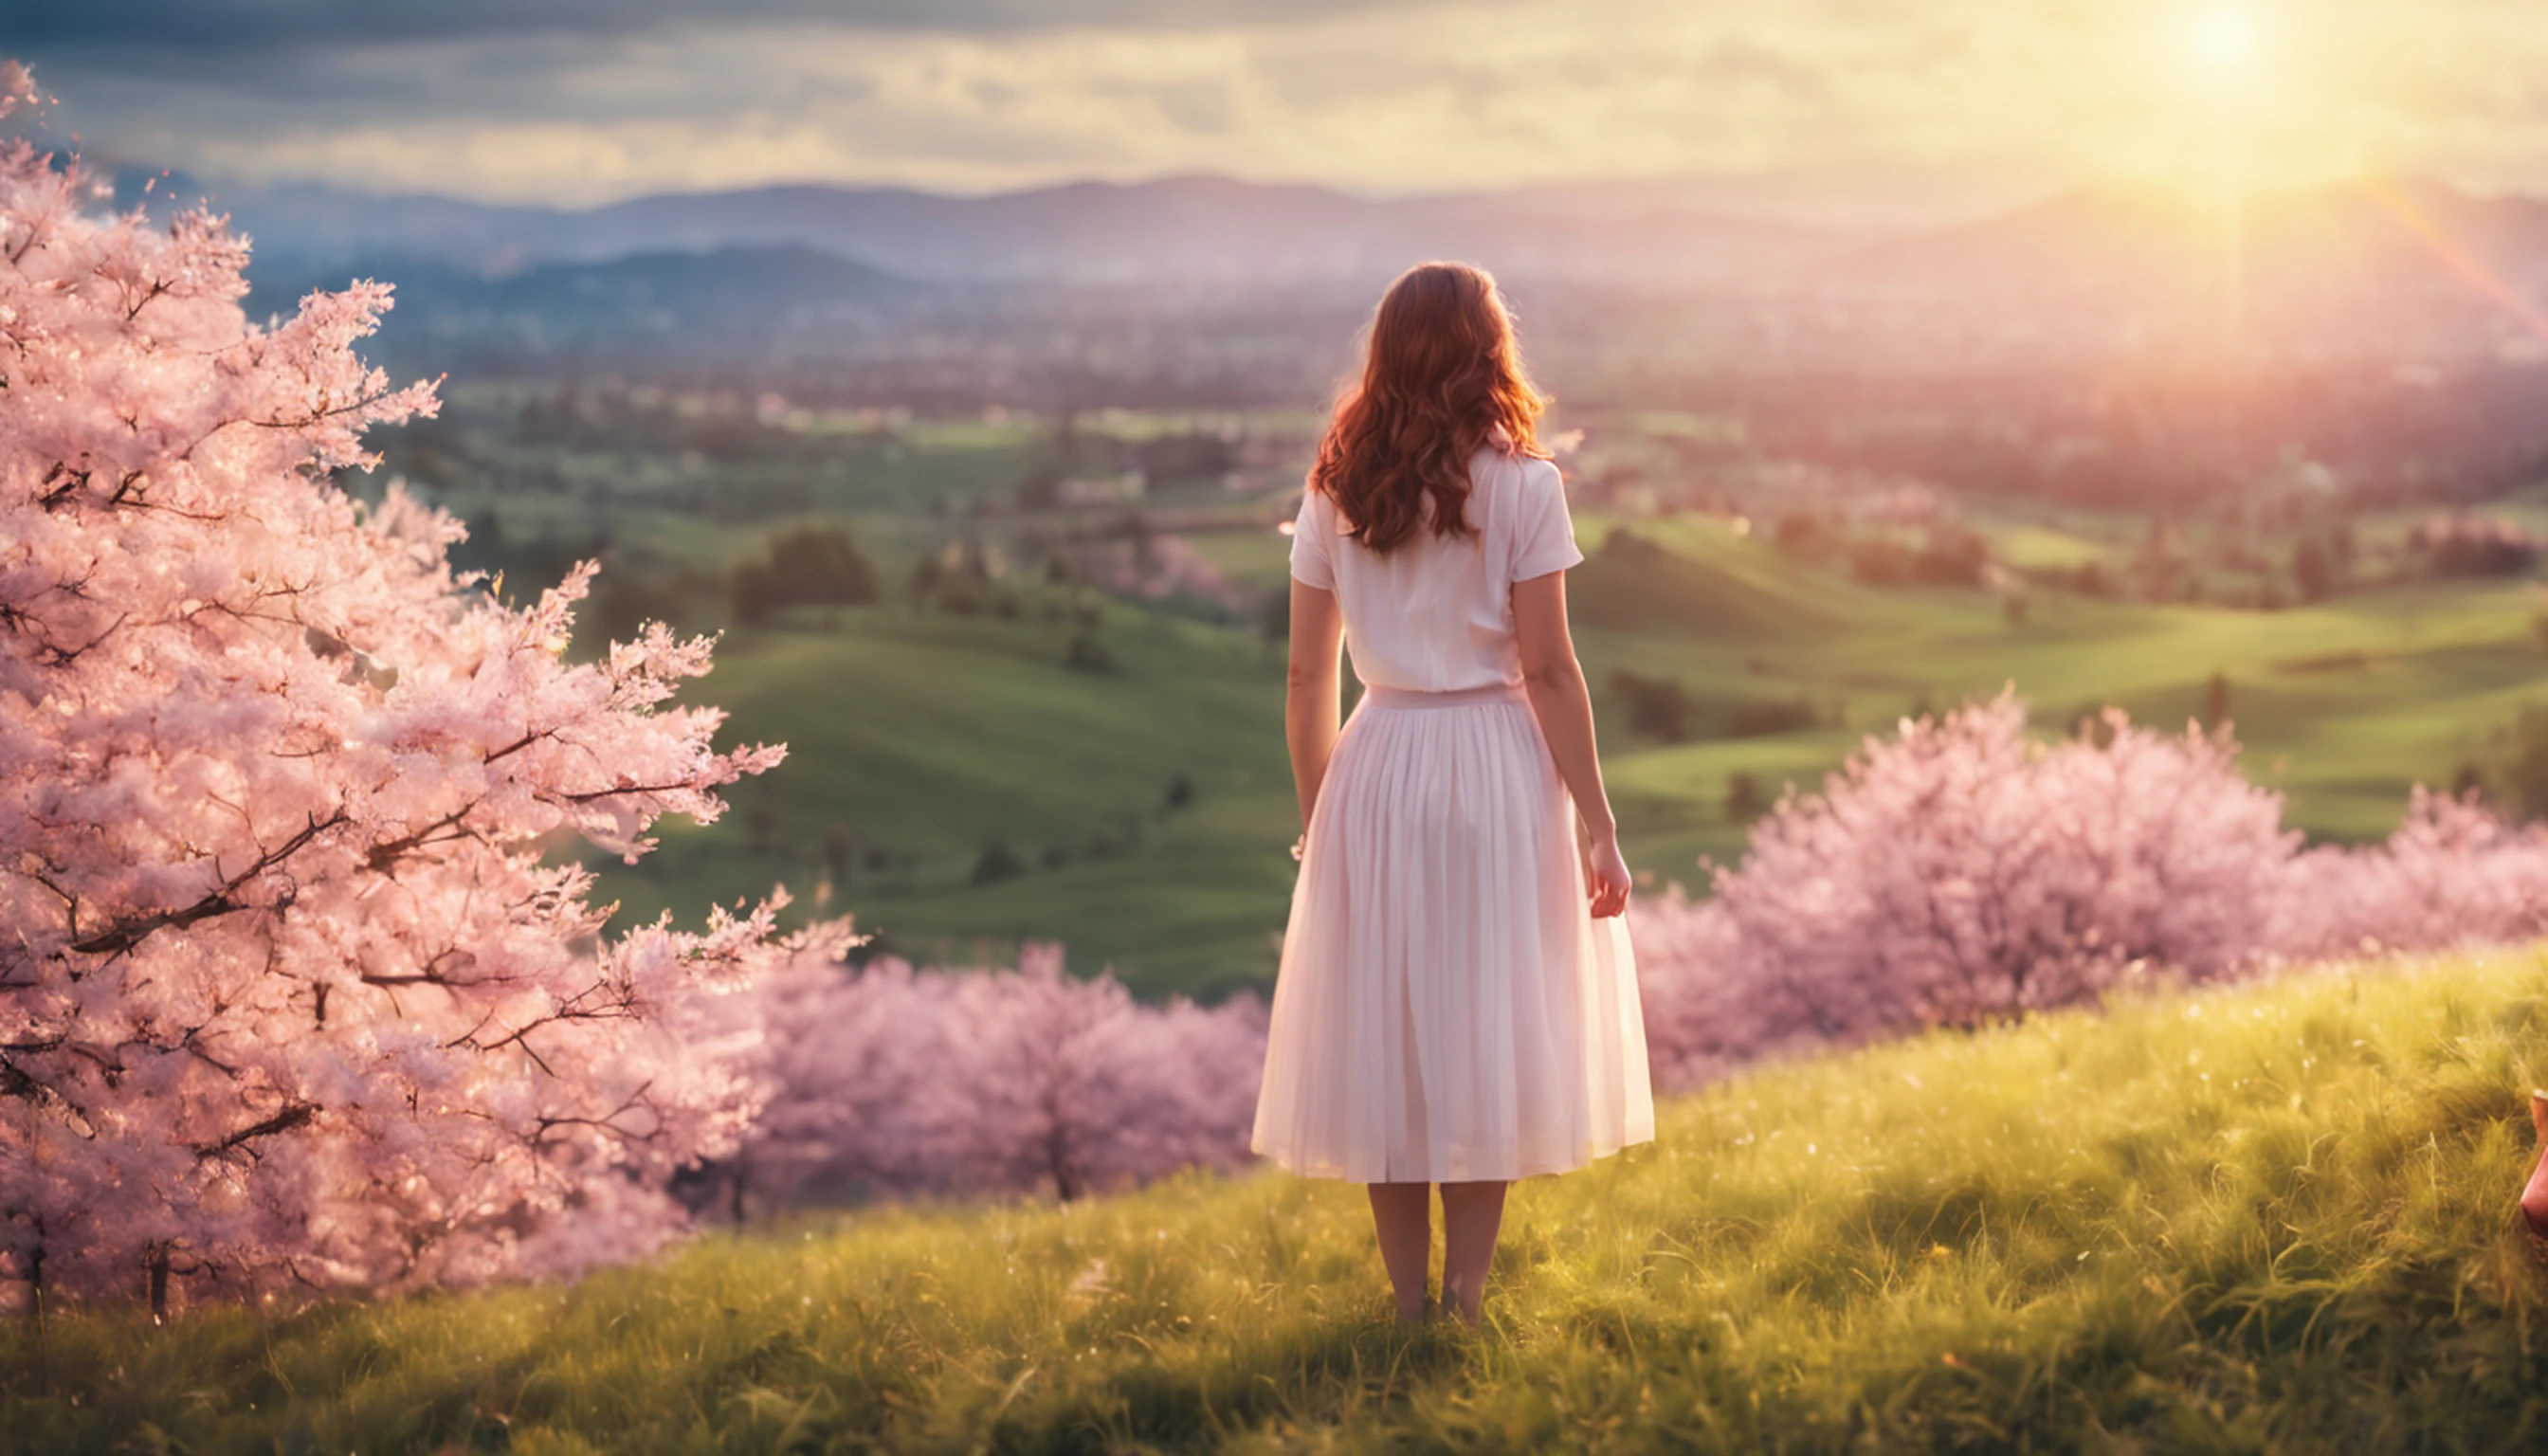 Großes Landschaftsfoto, (Untersicht, oben ist der Himmel und unten das offene Feld), Ein 30-jähriges Mädchen steht in einem Kirschblütenfeld und schaut nach oben, (Nimm den Schlüssel: 1.2), (Strahlen: 0.9), (Nebel: 1.3), ferne Berge, PAUSE Kunstbäume basteln, (Warmes Licht: 1.2), (Glühwürmchen: 1.2), Beleuchtung, viel Lila und Orange, komplizierte Details, volumetrische Beleuchtung, BREAK den Realismus (erste Arbeit: 1.2), (Bessere Qualität), 4k, ultradetailliert, (dynamisches Compositing: 1.4), sehr detaillierte und farbenfrohe Details, (Regenbogenfarben: 1.2), (helle Beleuchtung, Stimmungsvolle Beleuchtung), Träumer, magisch, (Allein: 1.2)